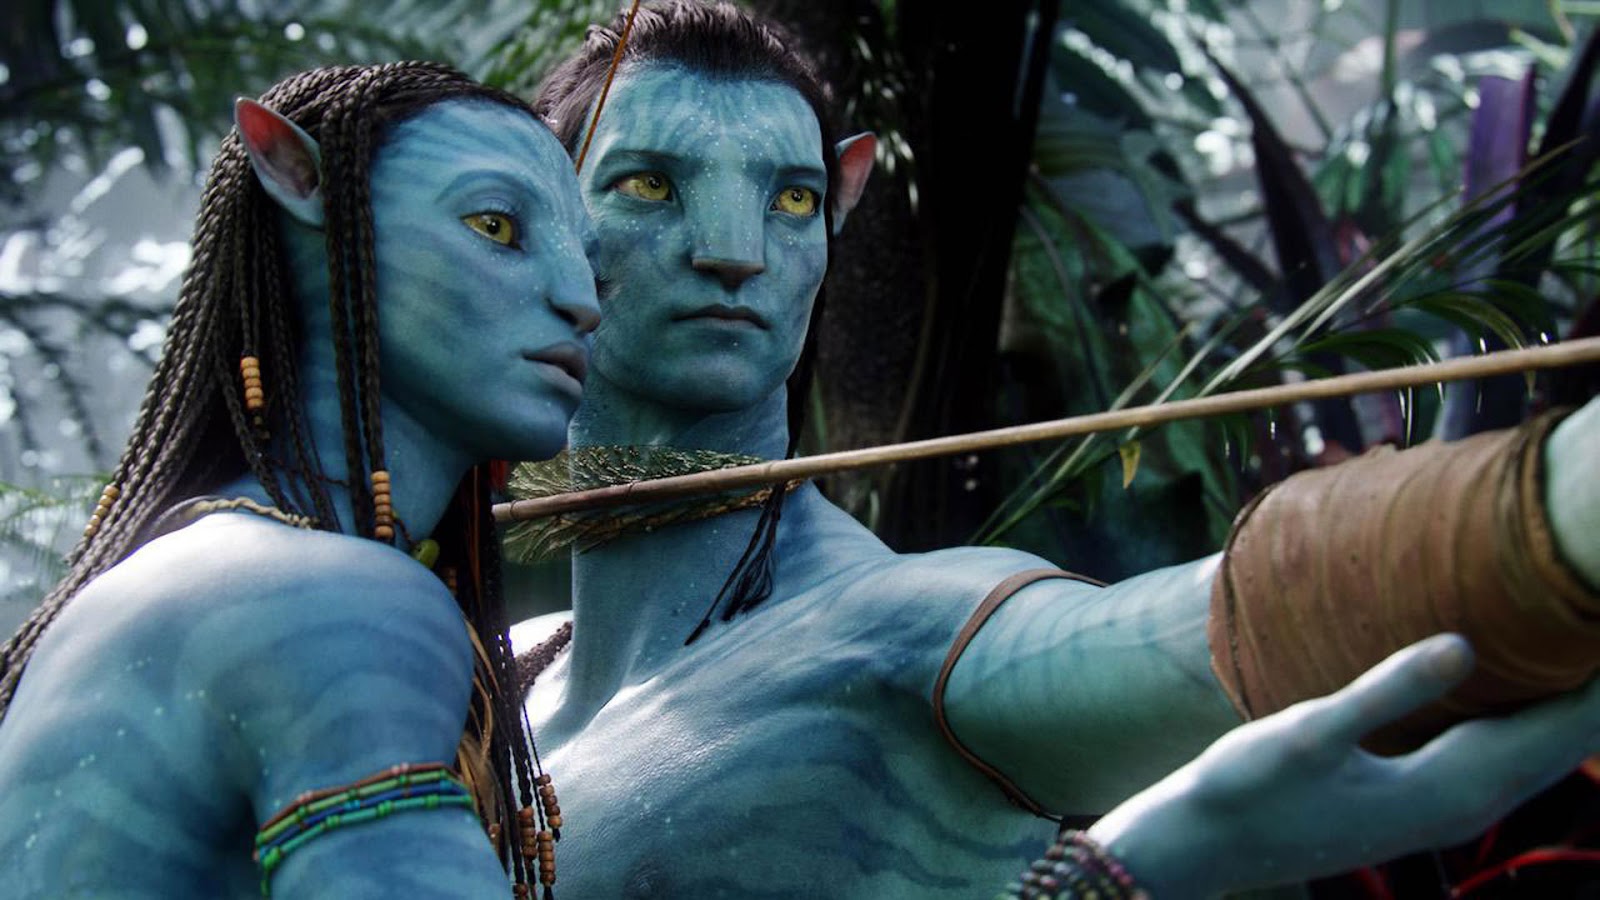 Shwan Mendes Xxx Sex Videos - Avatar 2â€ revela o filho de Jake e Neytiri na primeira imagem oficial |  LOUCOSPORFILMES.net